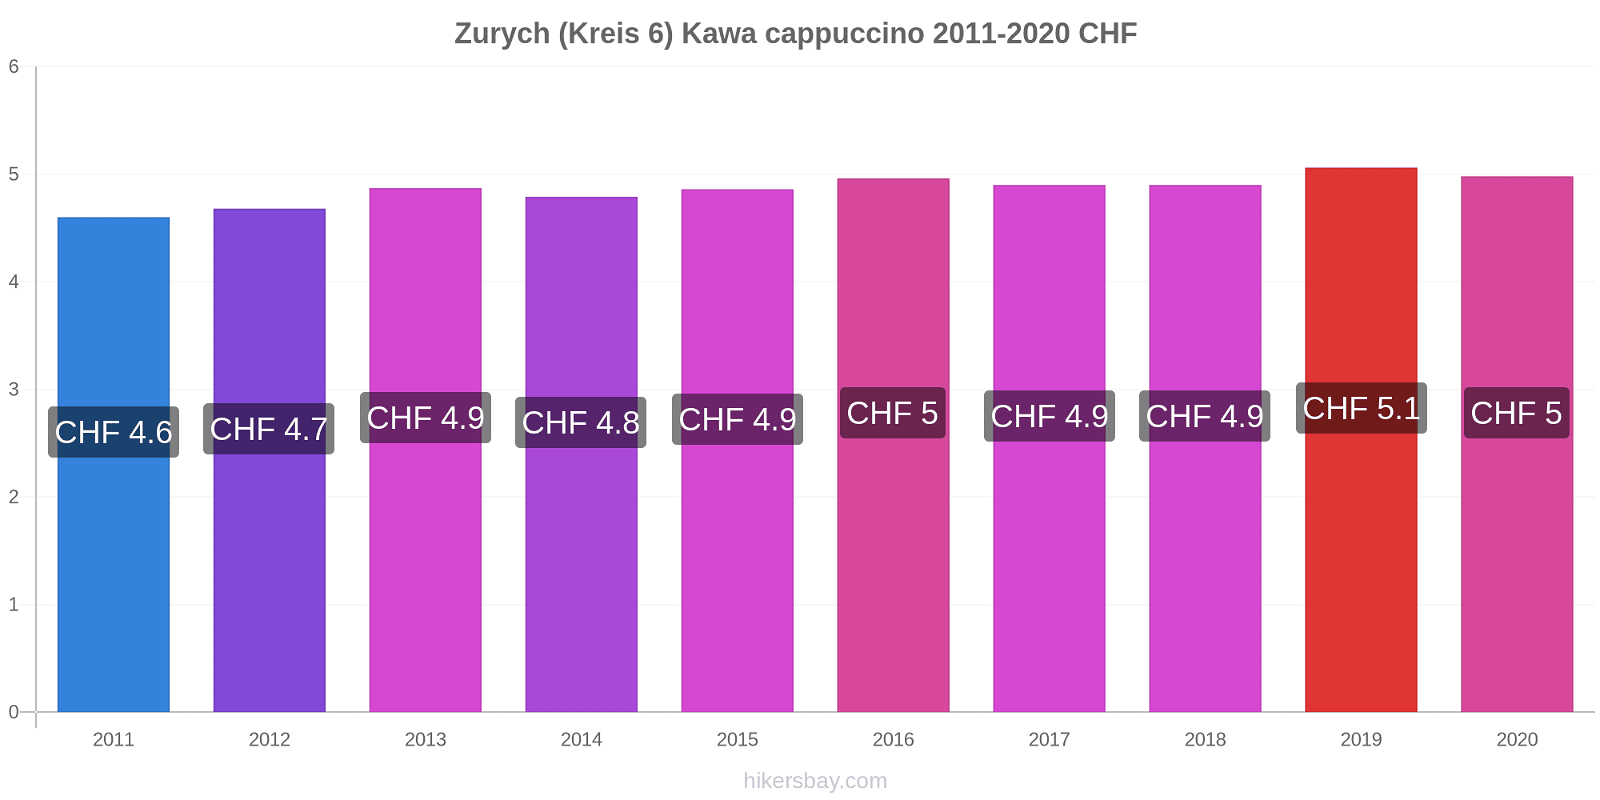 Zurych (Kreis 6) zmiany cen Kawa cappuccino hikersbay.com